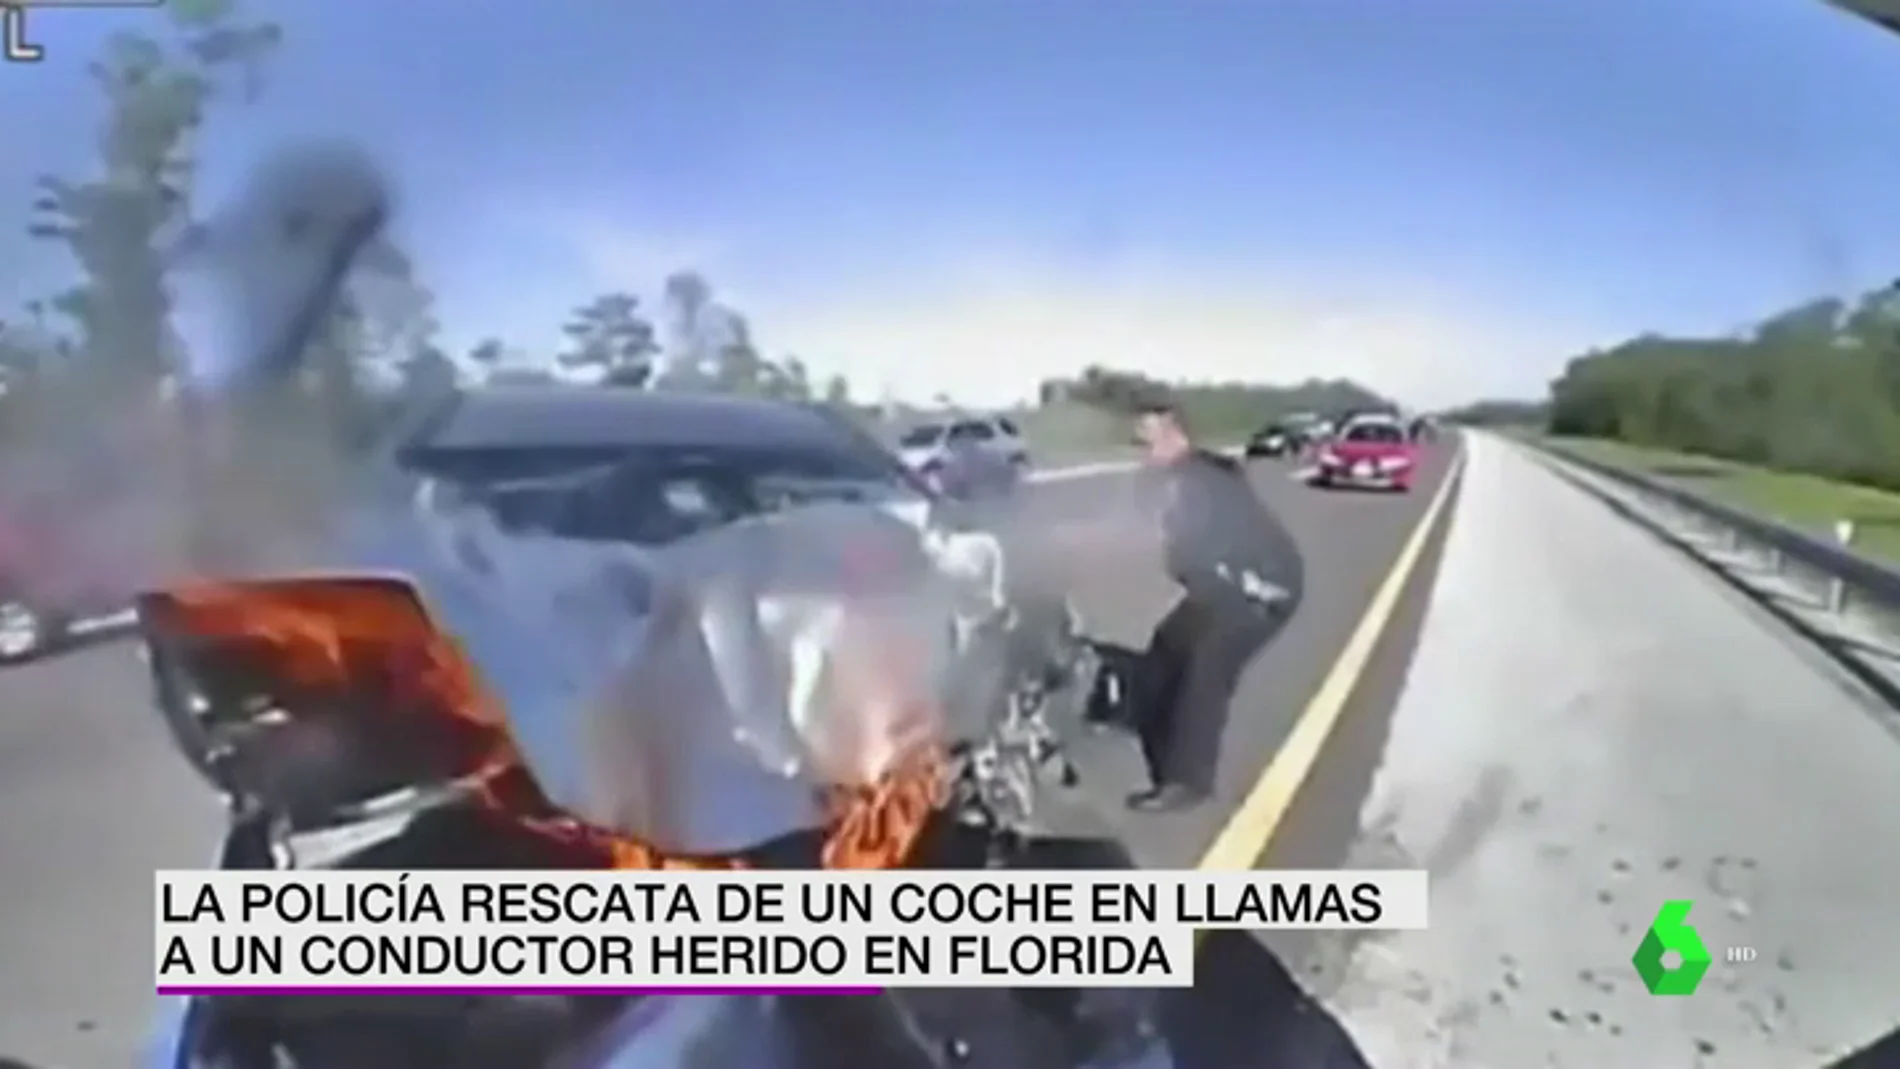 La policía rescata de un coche en llamas a un conductor herido en Florida